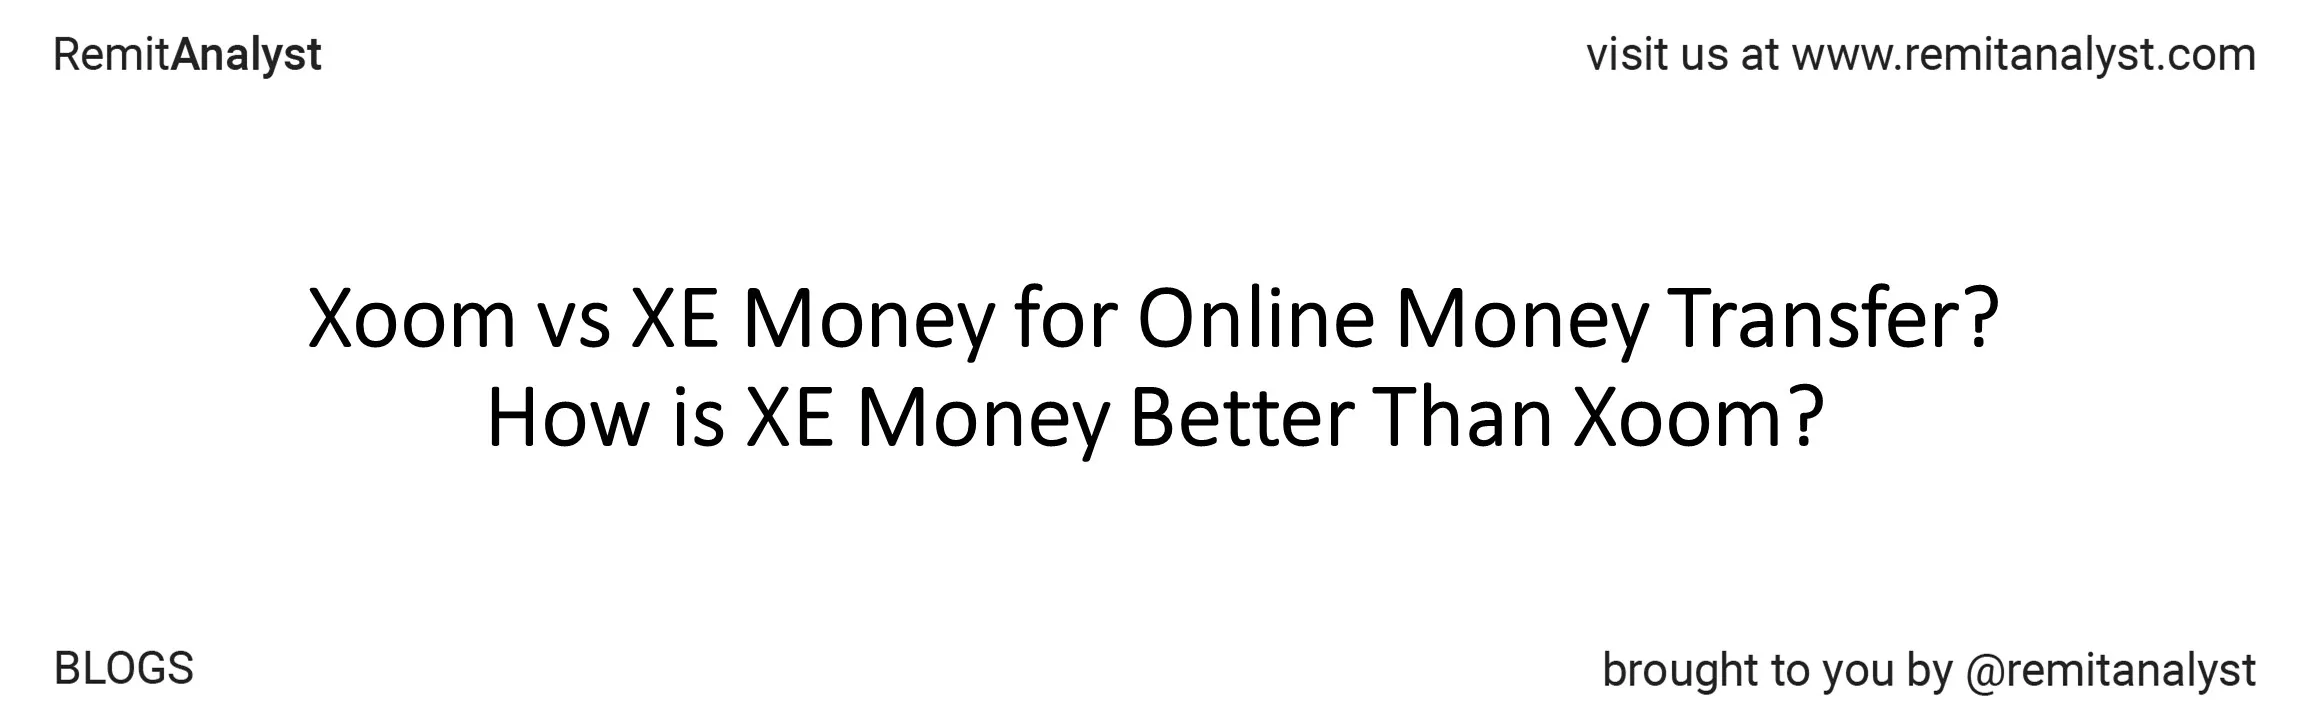 xoom-vs-xe-for-online-money-transfer-title